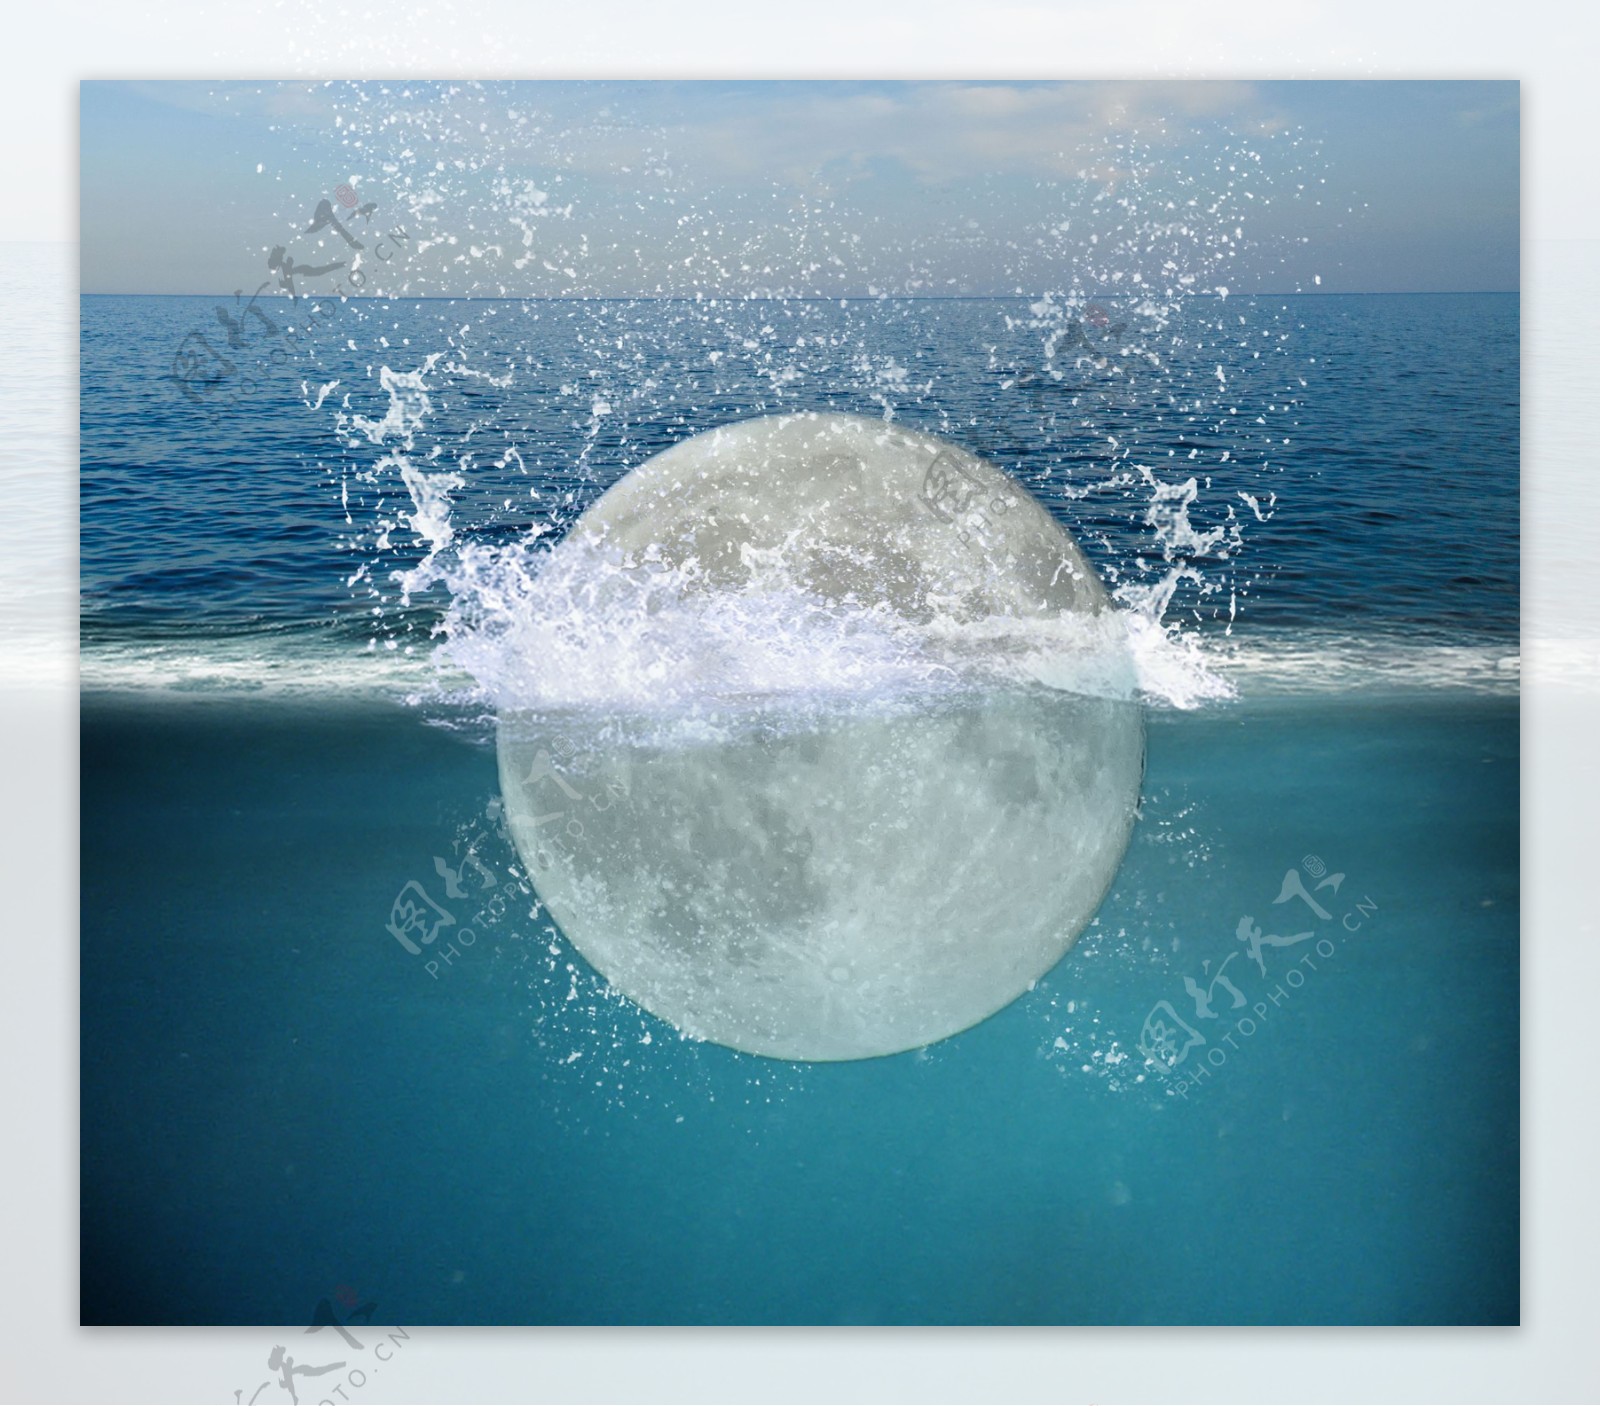 月亮掉进大海创意合成素材